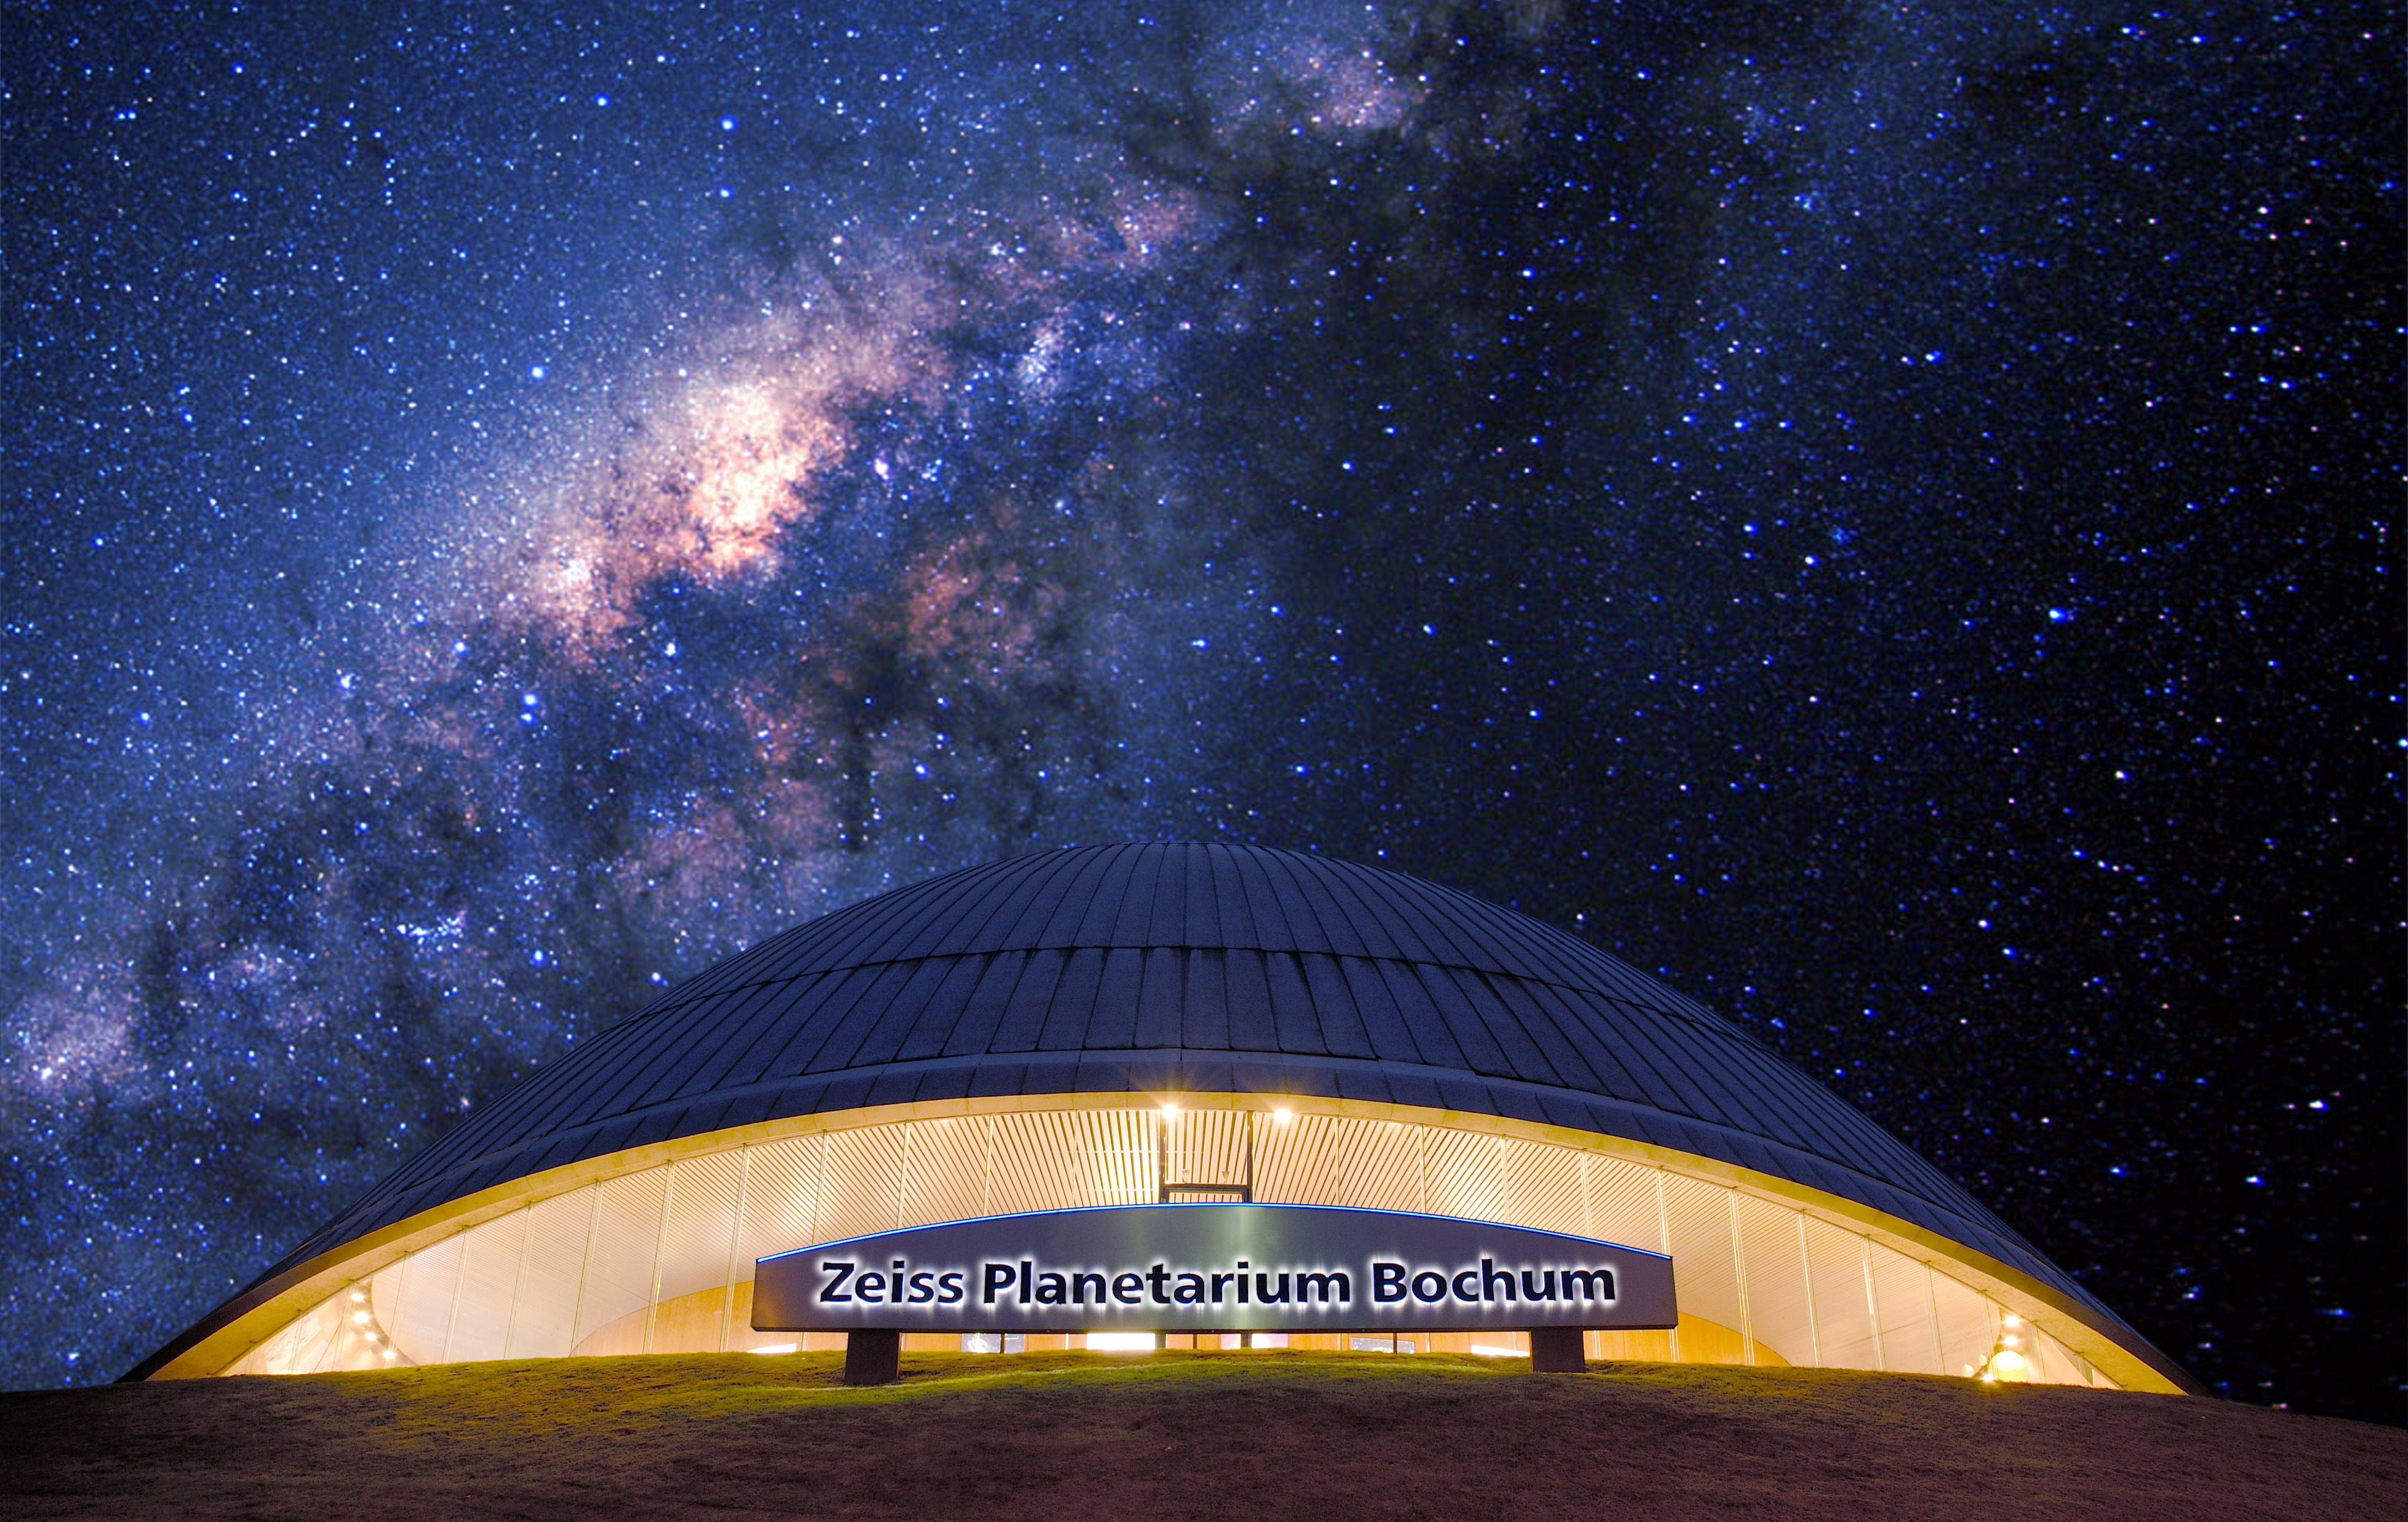 Das Zeiss Planetarium Bochum vorm Nachthimmel